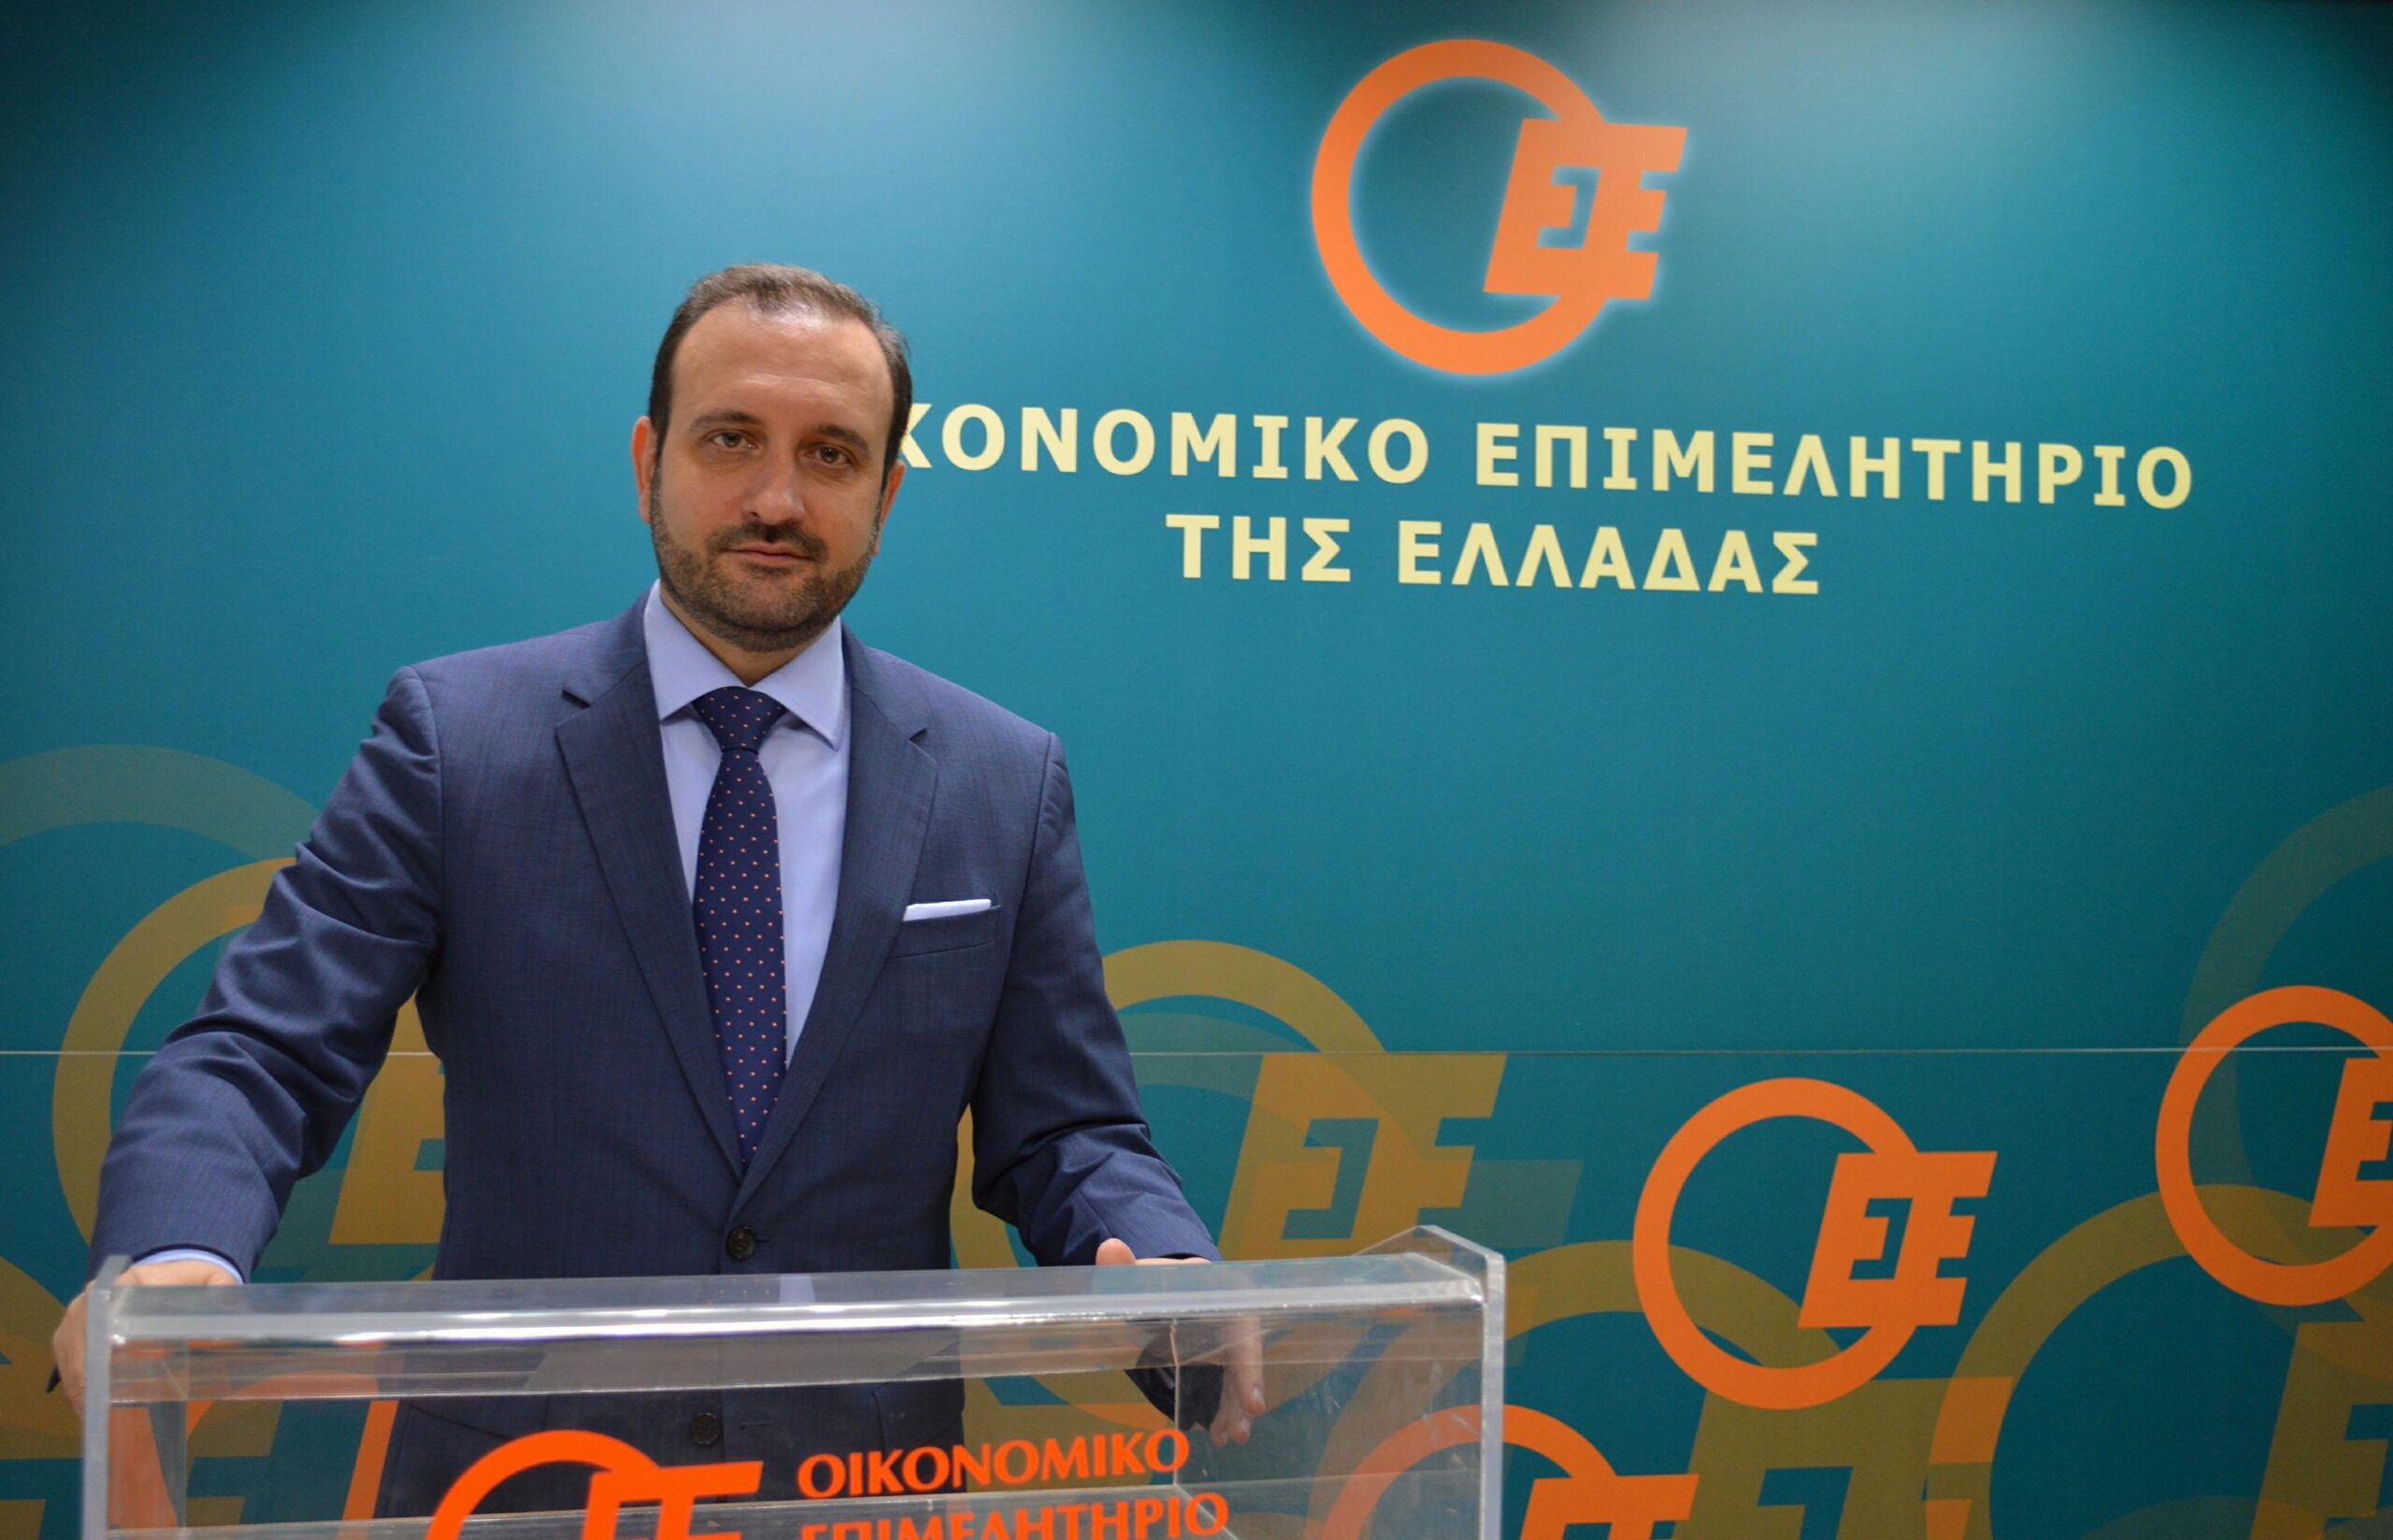 Κωνσταντίνος Κόλλιας : «πολλαπλά οφέλη για τα ελληνικά νοικοκυριά από την μείωση του ΕΝΦΙΑ»